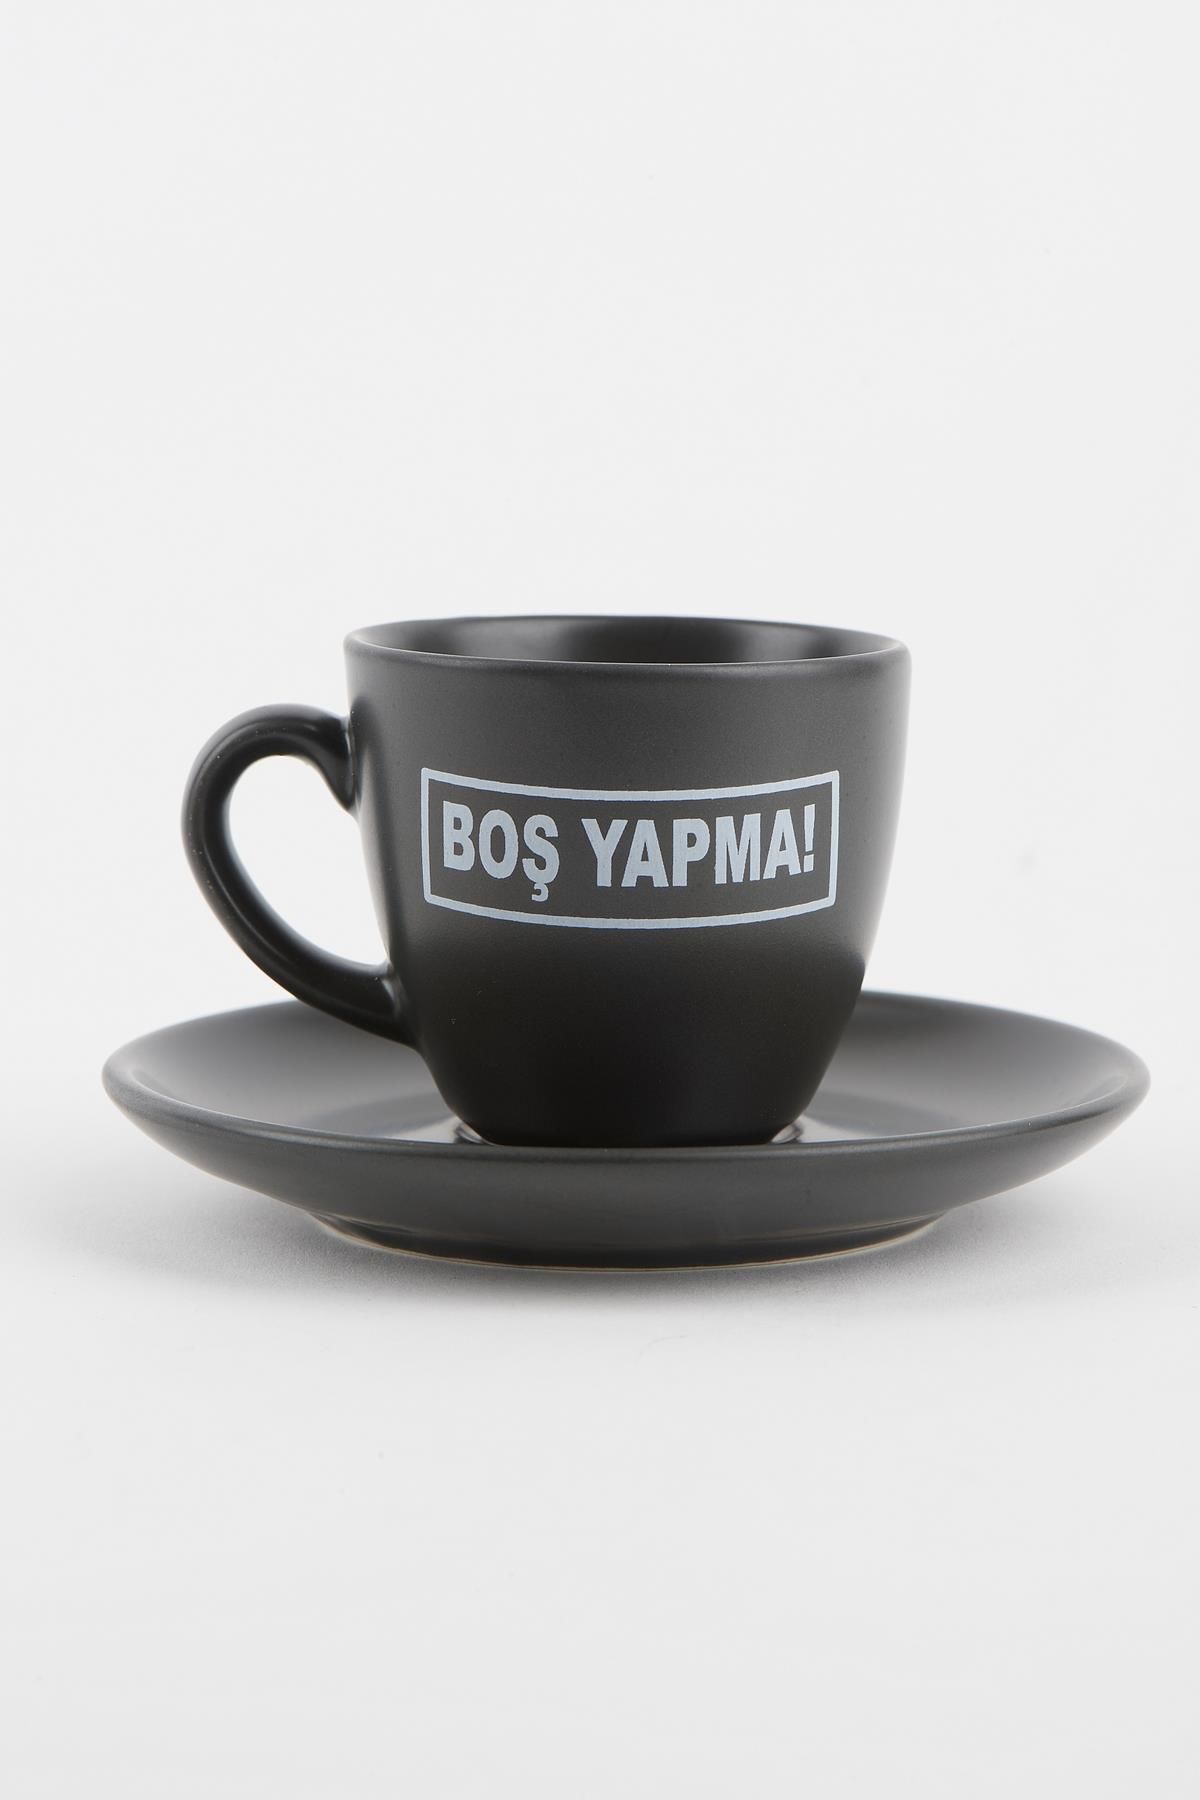 Soobepark 'Boş Yapma' Yazılı Hediyelik Türk Kahve Fincan Takımı Siyah